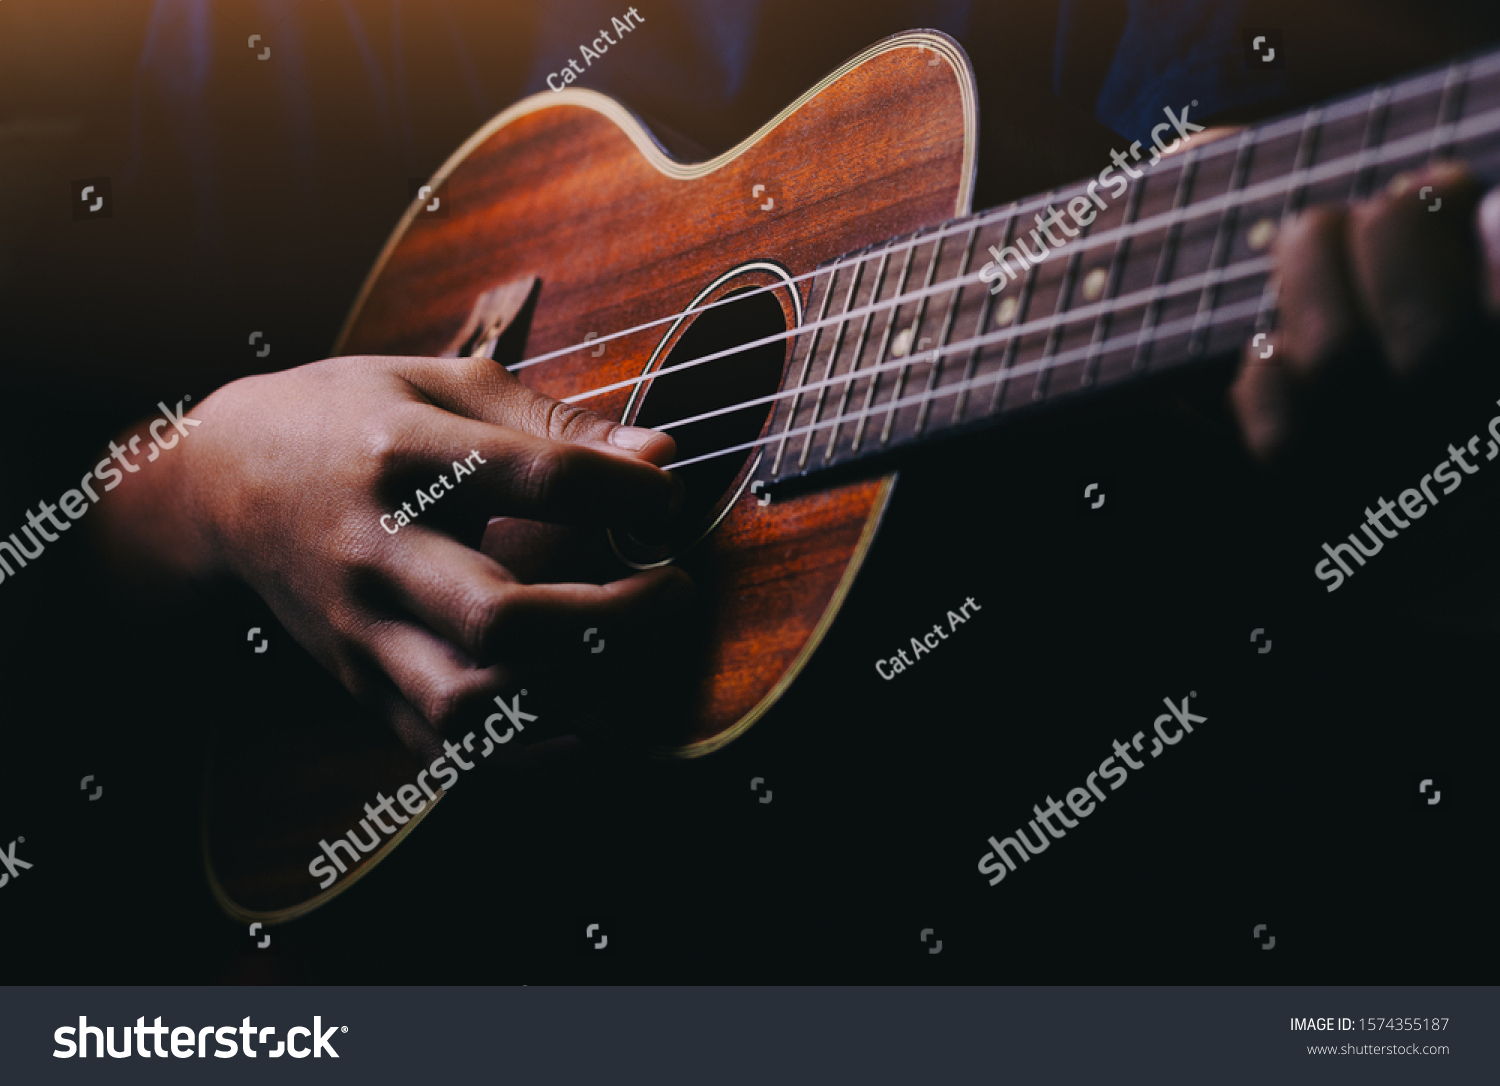 Hands playing acoustic guitar ukulele #1574355187